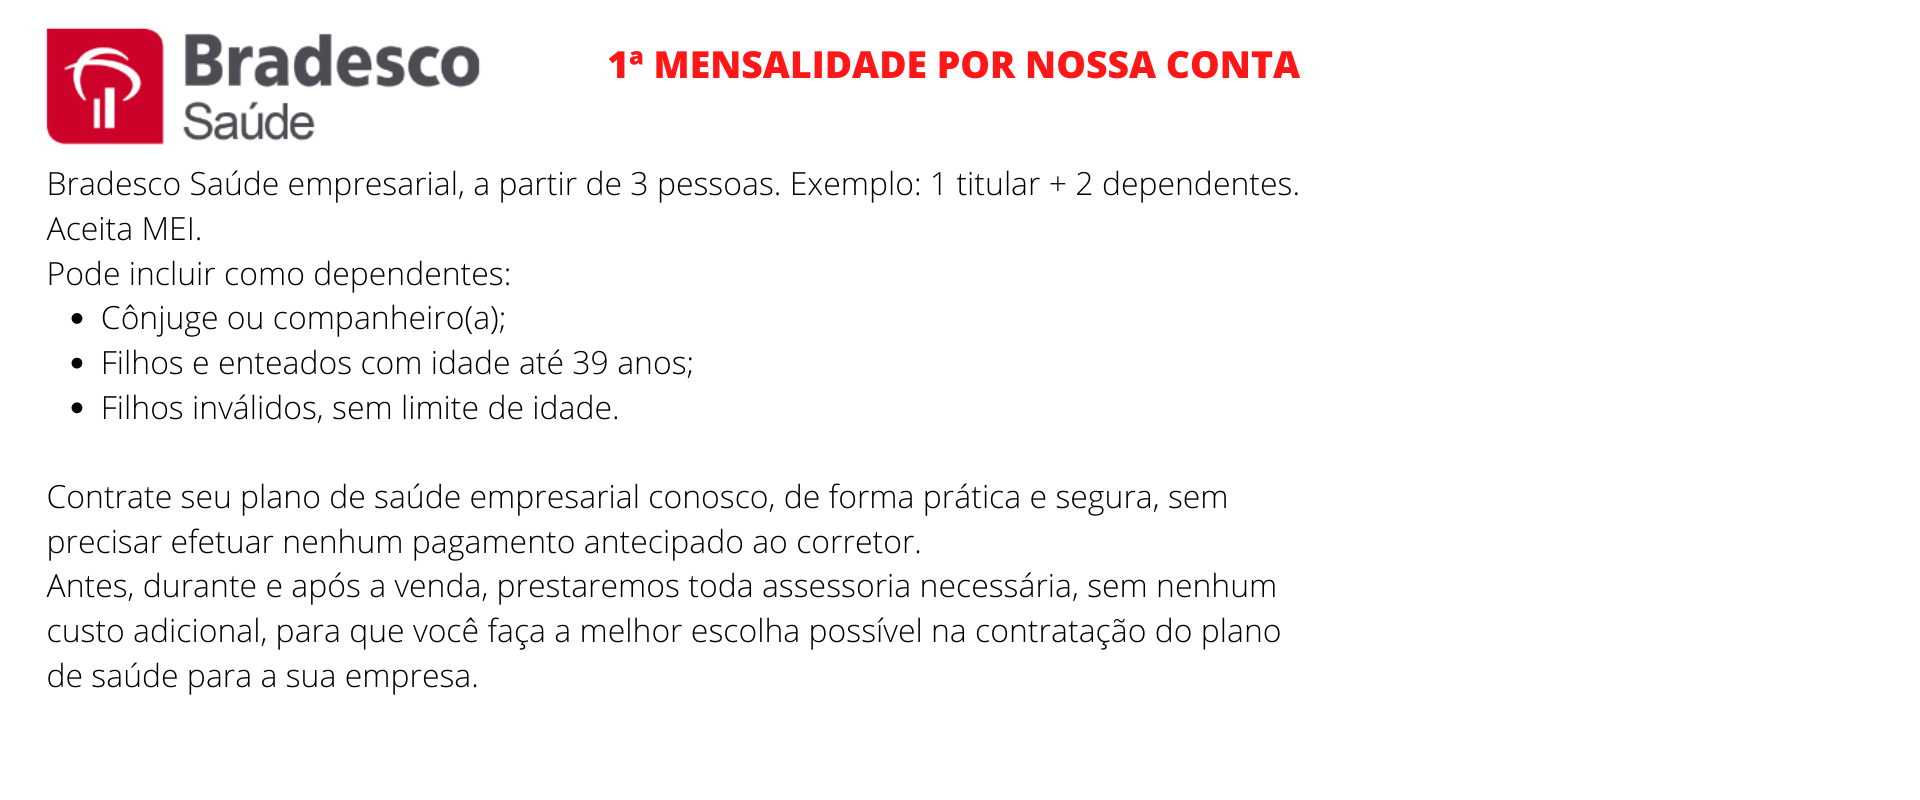 Bradesco Saúde Empresarial – Teixeira de Freitas